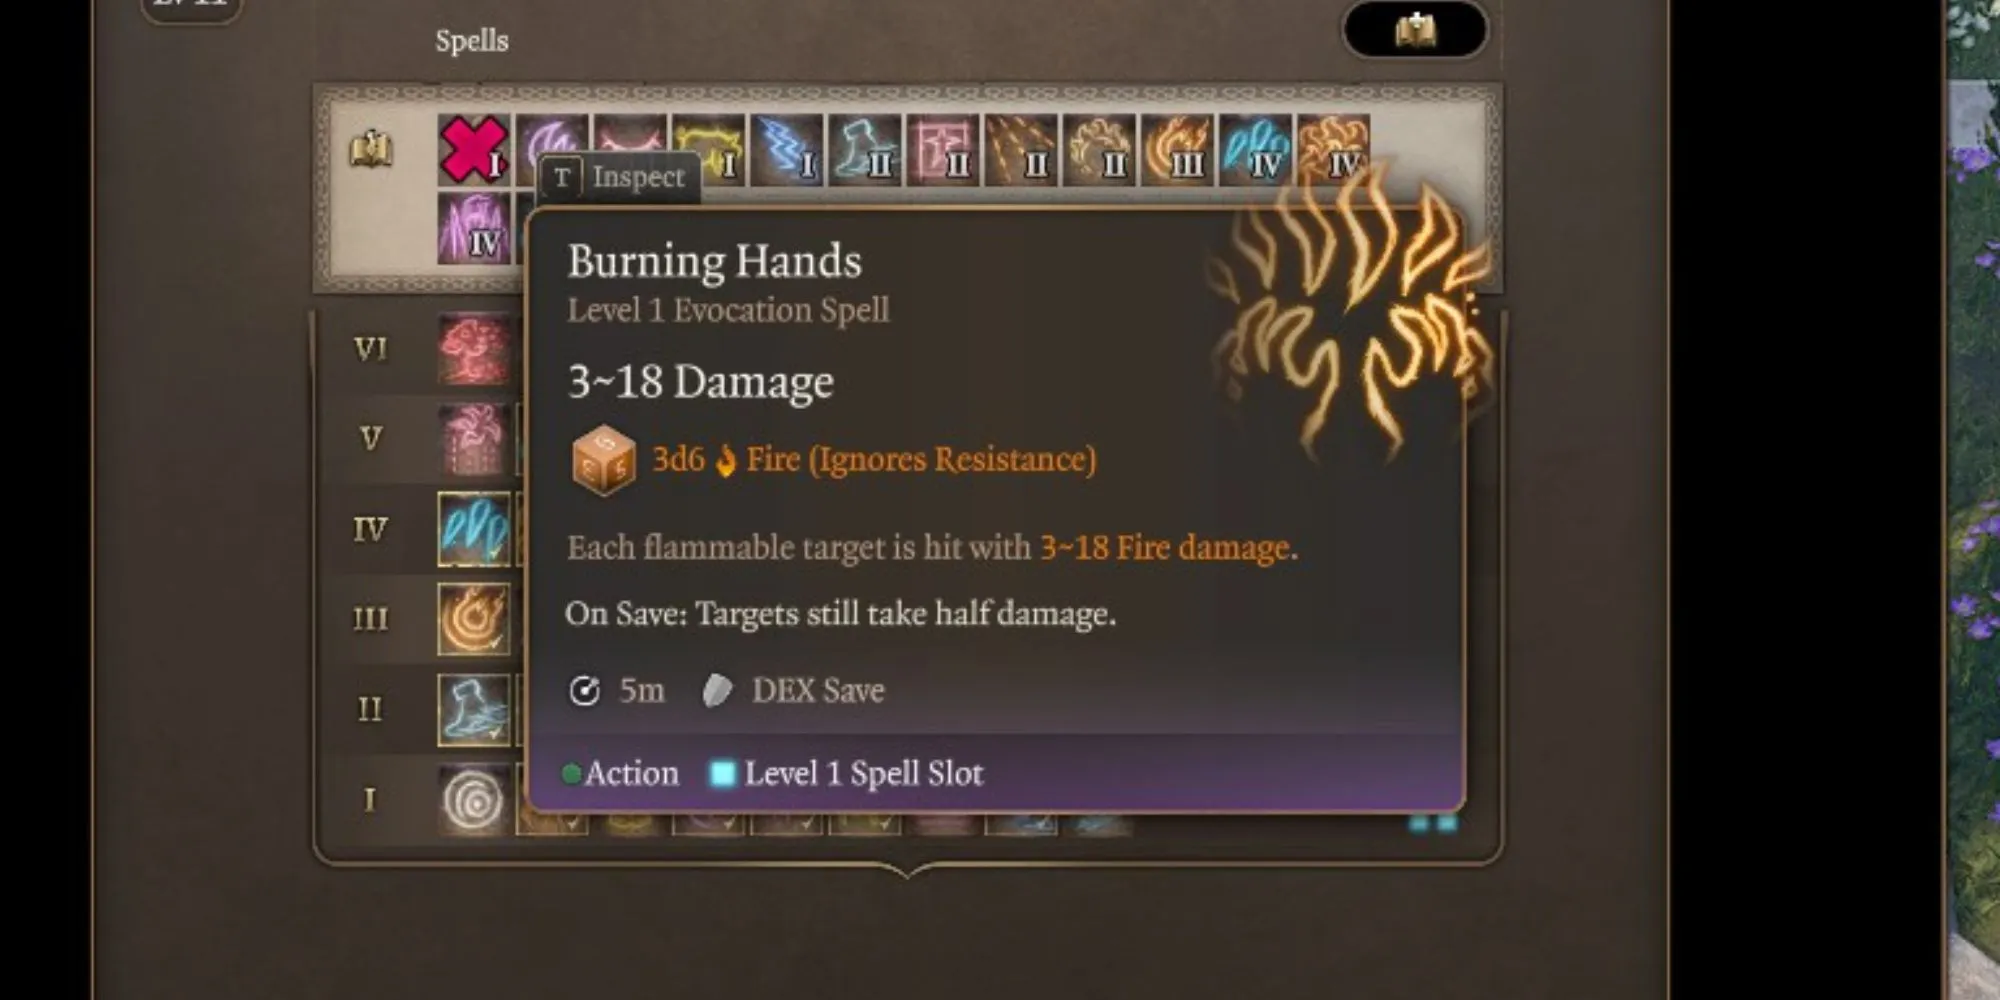 The Burning Hands spell in Baldur’s Gate 3